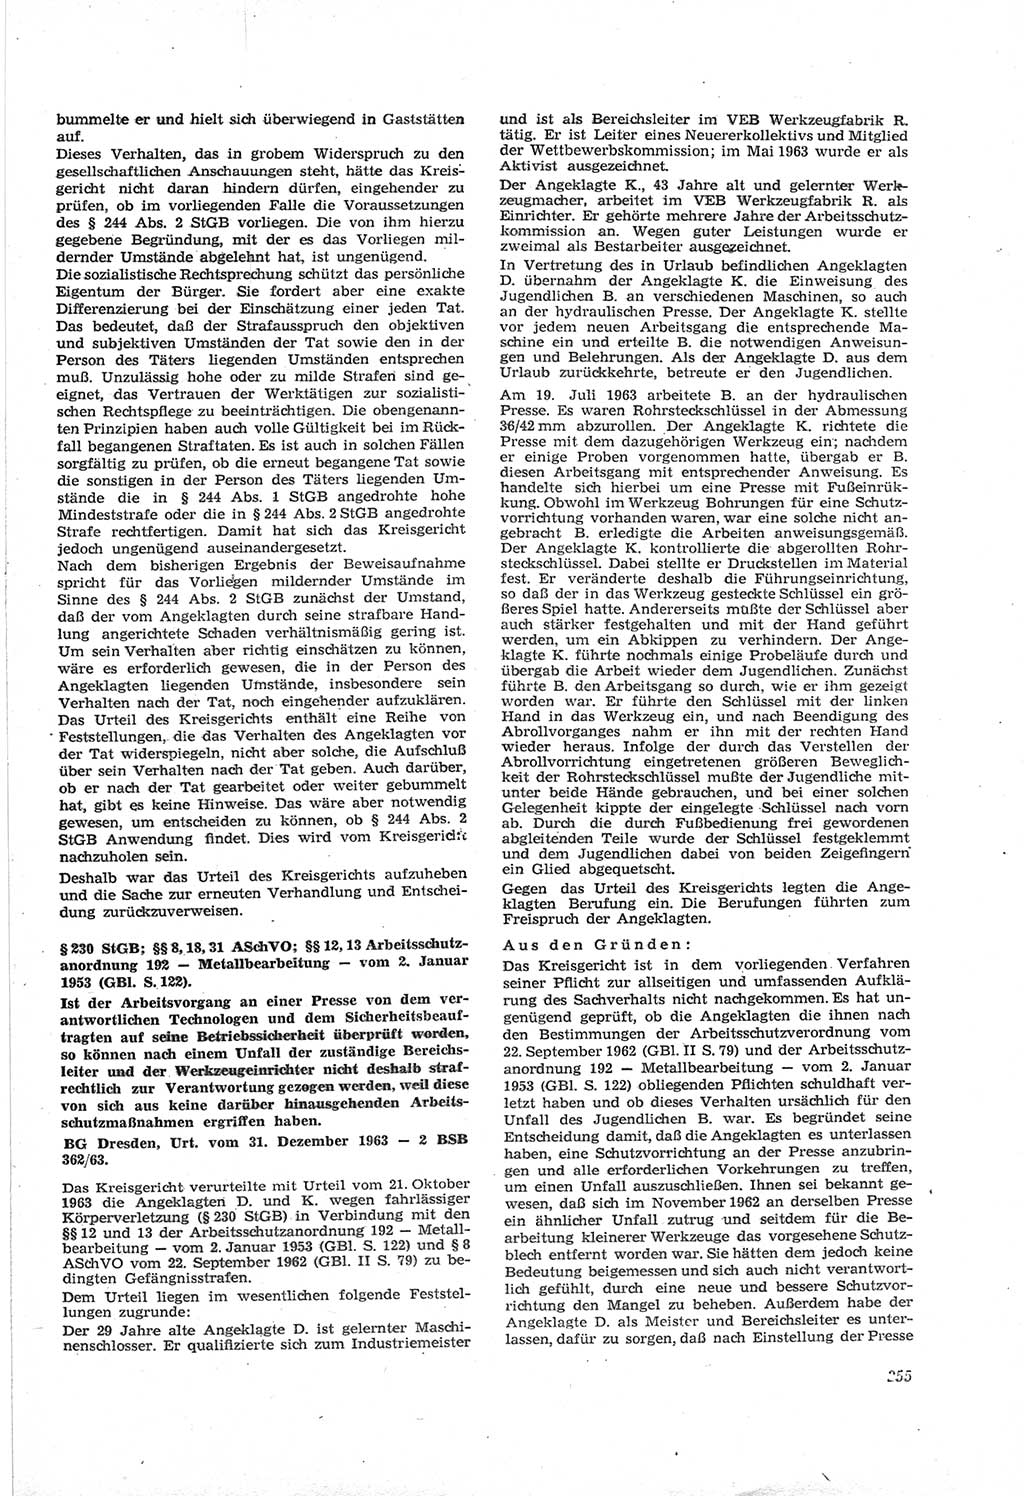 Neue Justiz (NJ), Zeitschrift für Recht und Rechtswissenschaft [Deutsche Demokratische Republik (DDR)], 18. Jahrgang 1964, Seite 255 (NJ DDR 1964, S. 255)